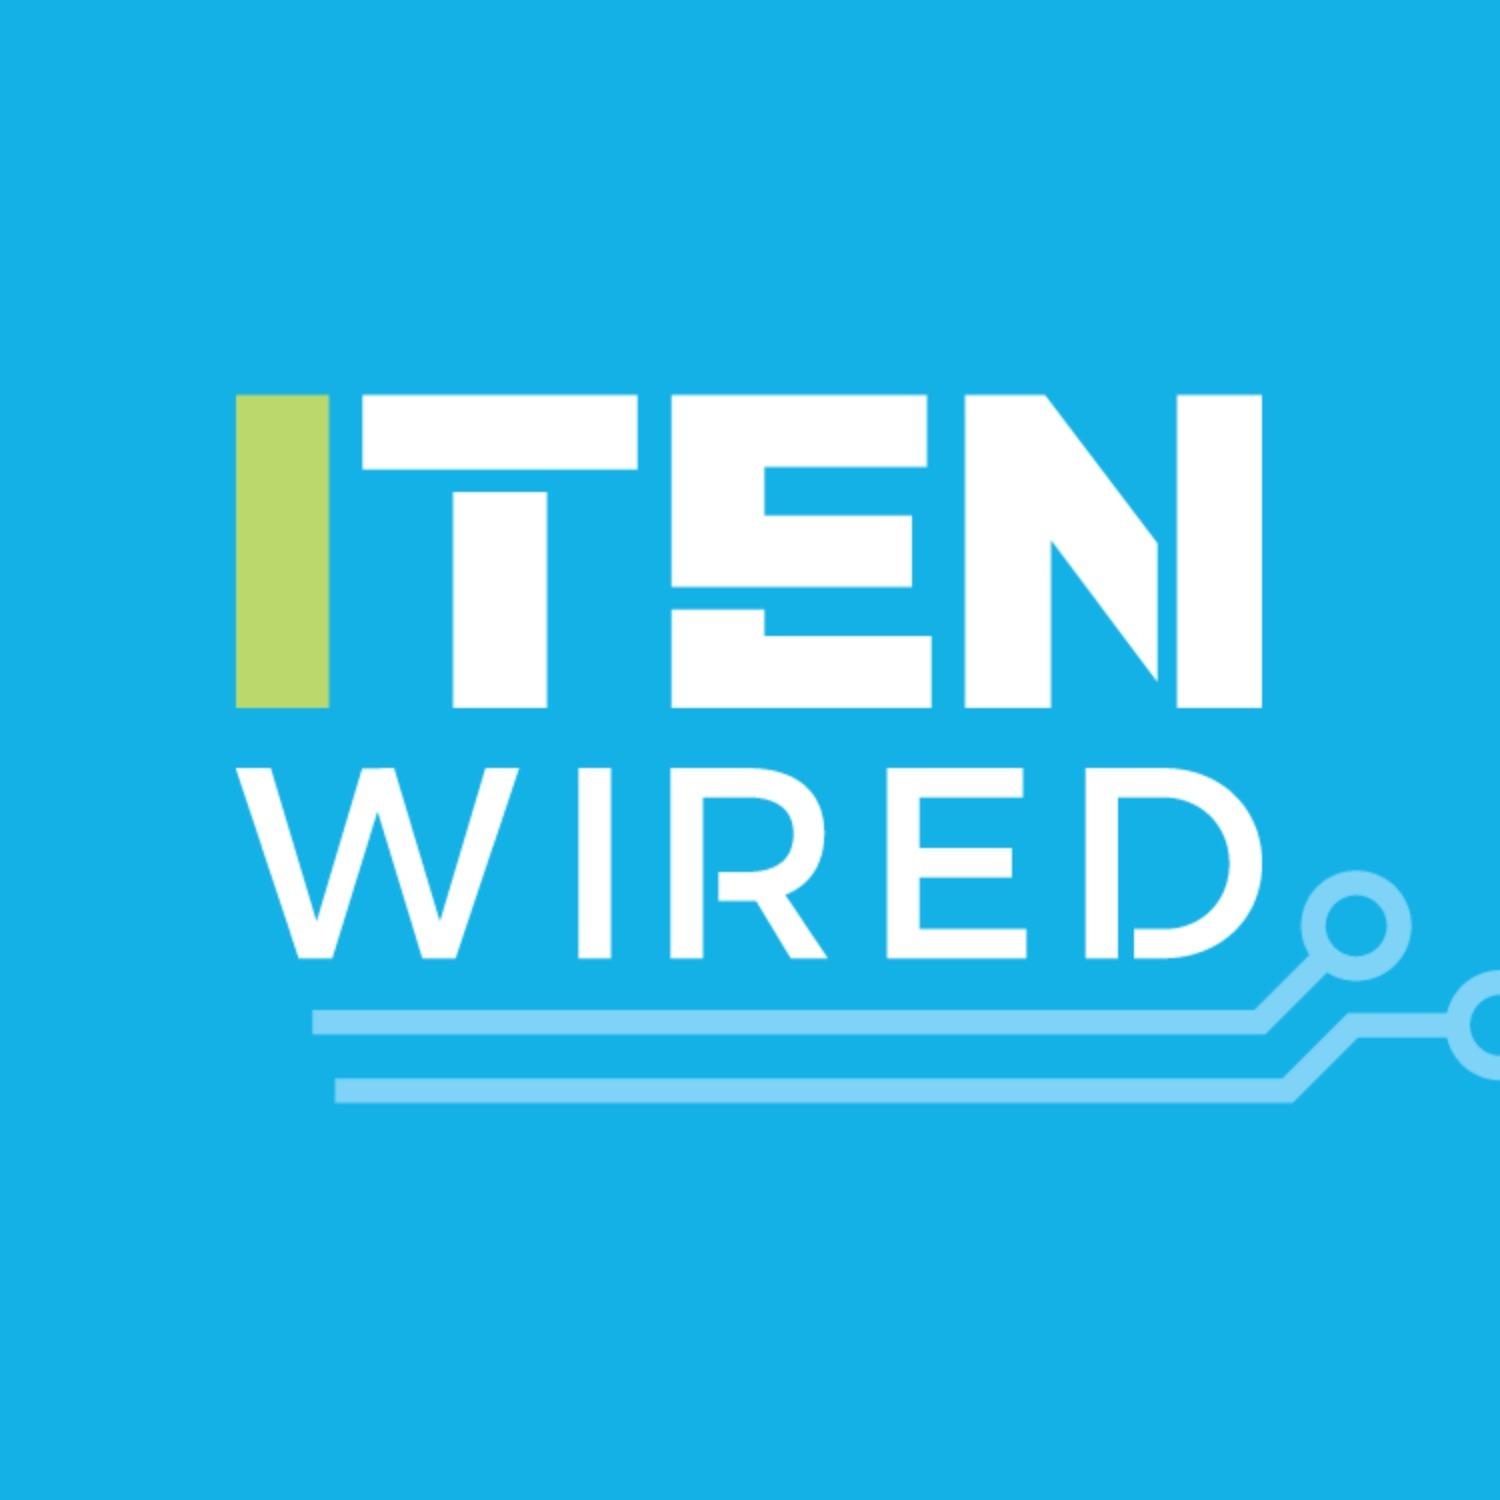 ITEN Wired Radio-Professional Development Episode